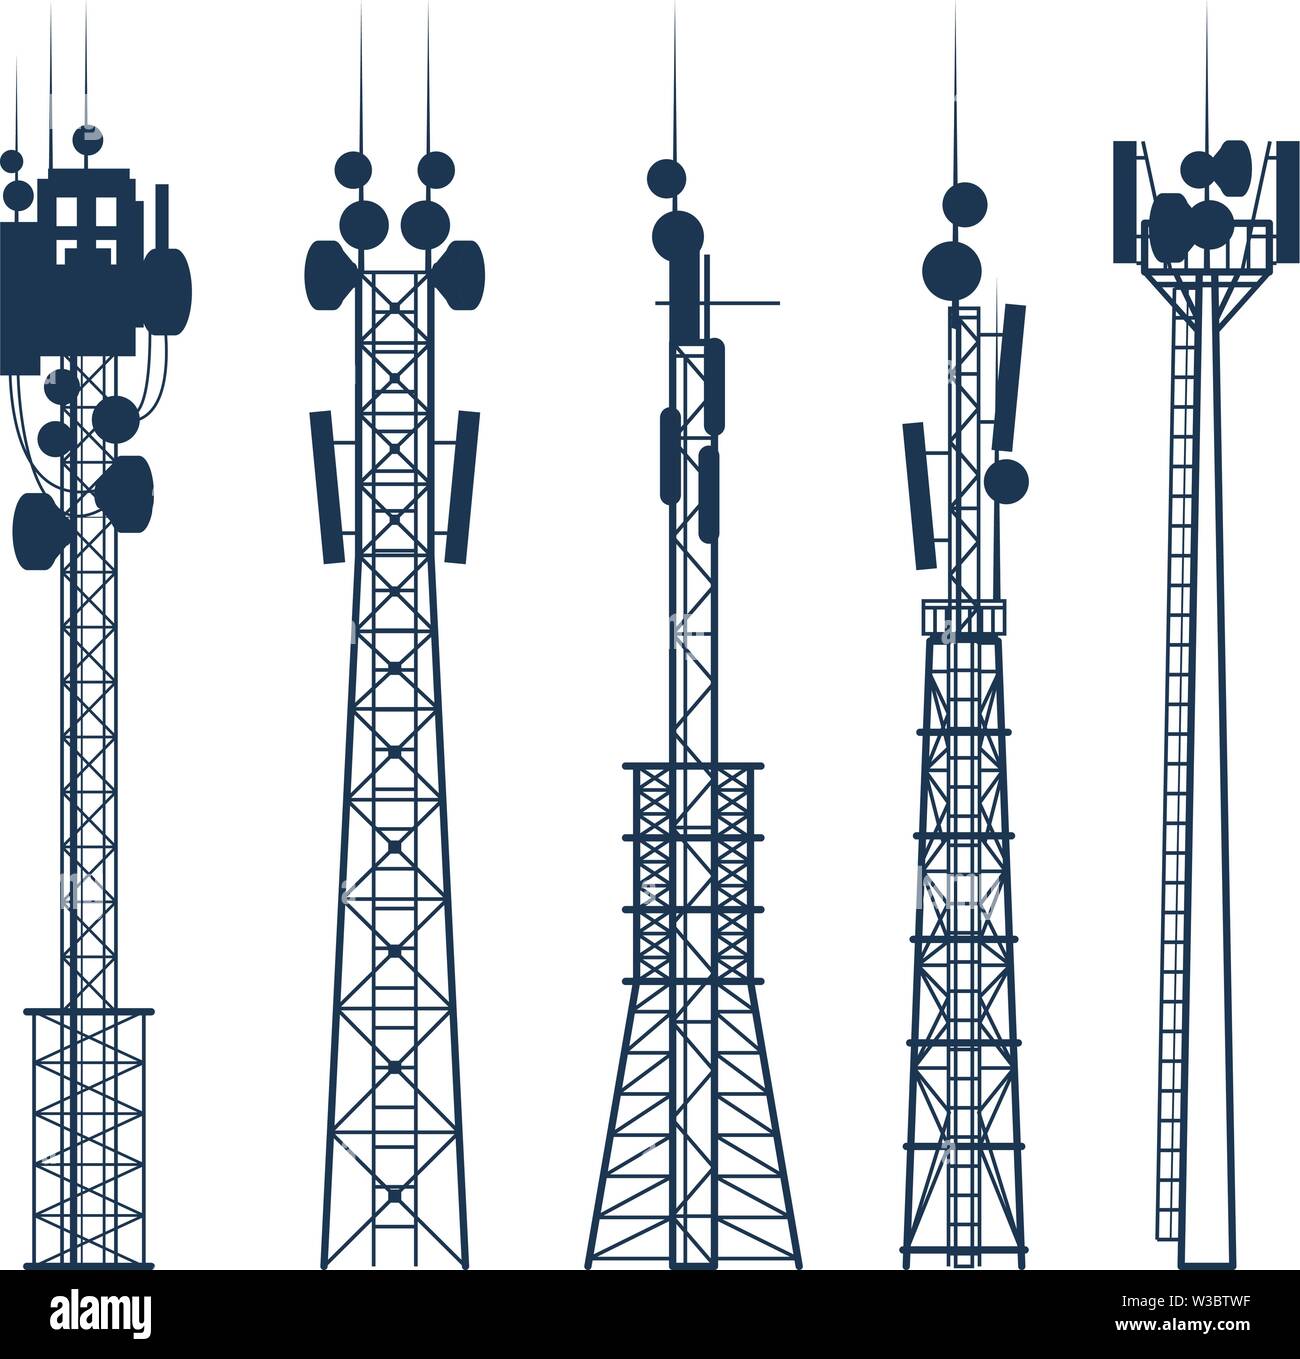 Les tours de téléphonie cellulaire de transmission, l'antenne de communication par satellite, silhouette de la tour signal radio Illustration de Vecteur